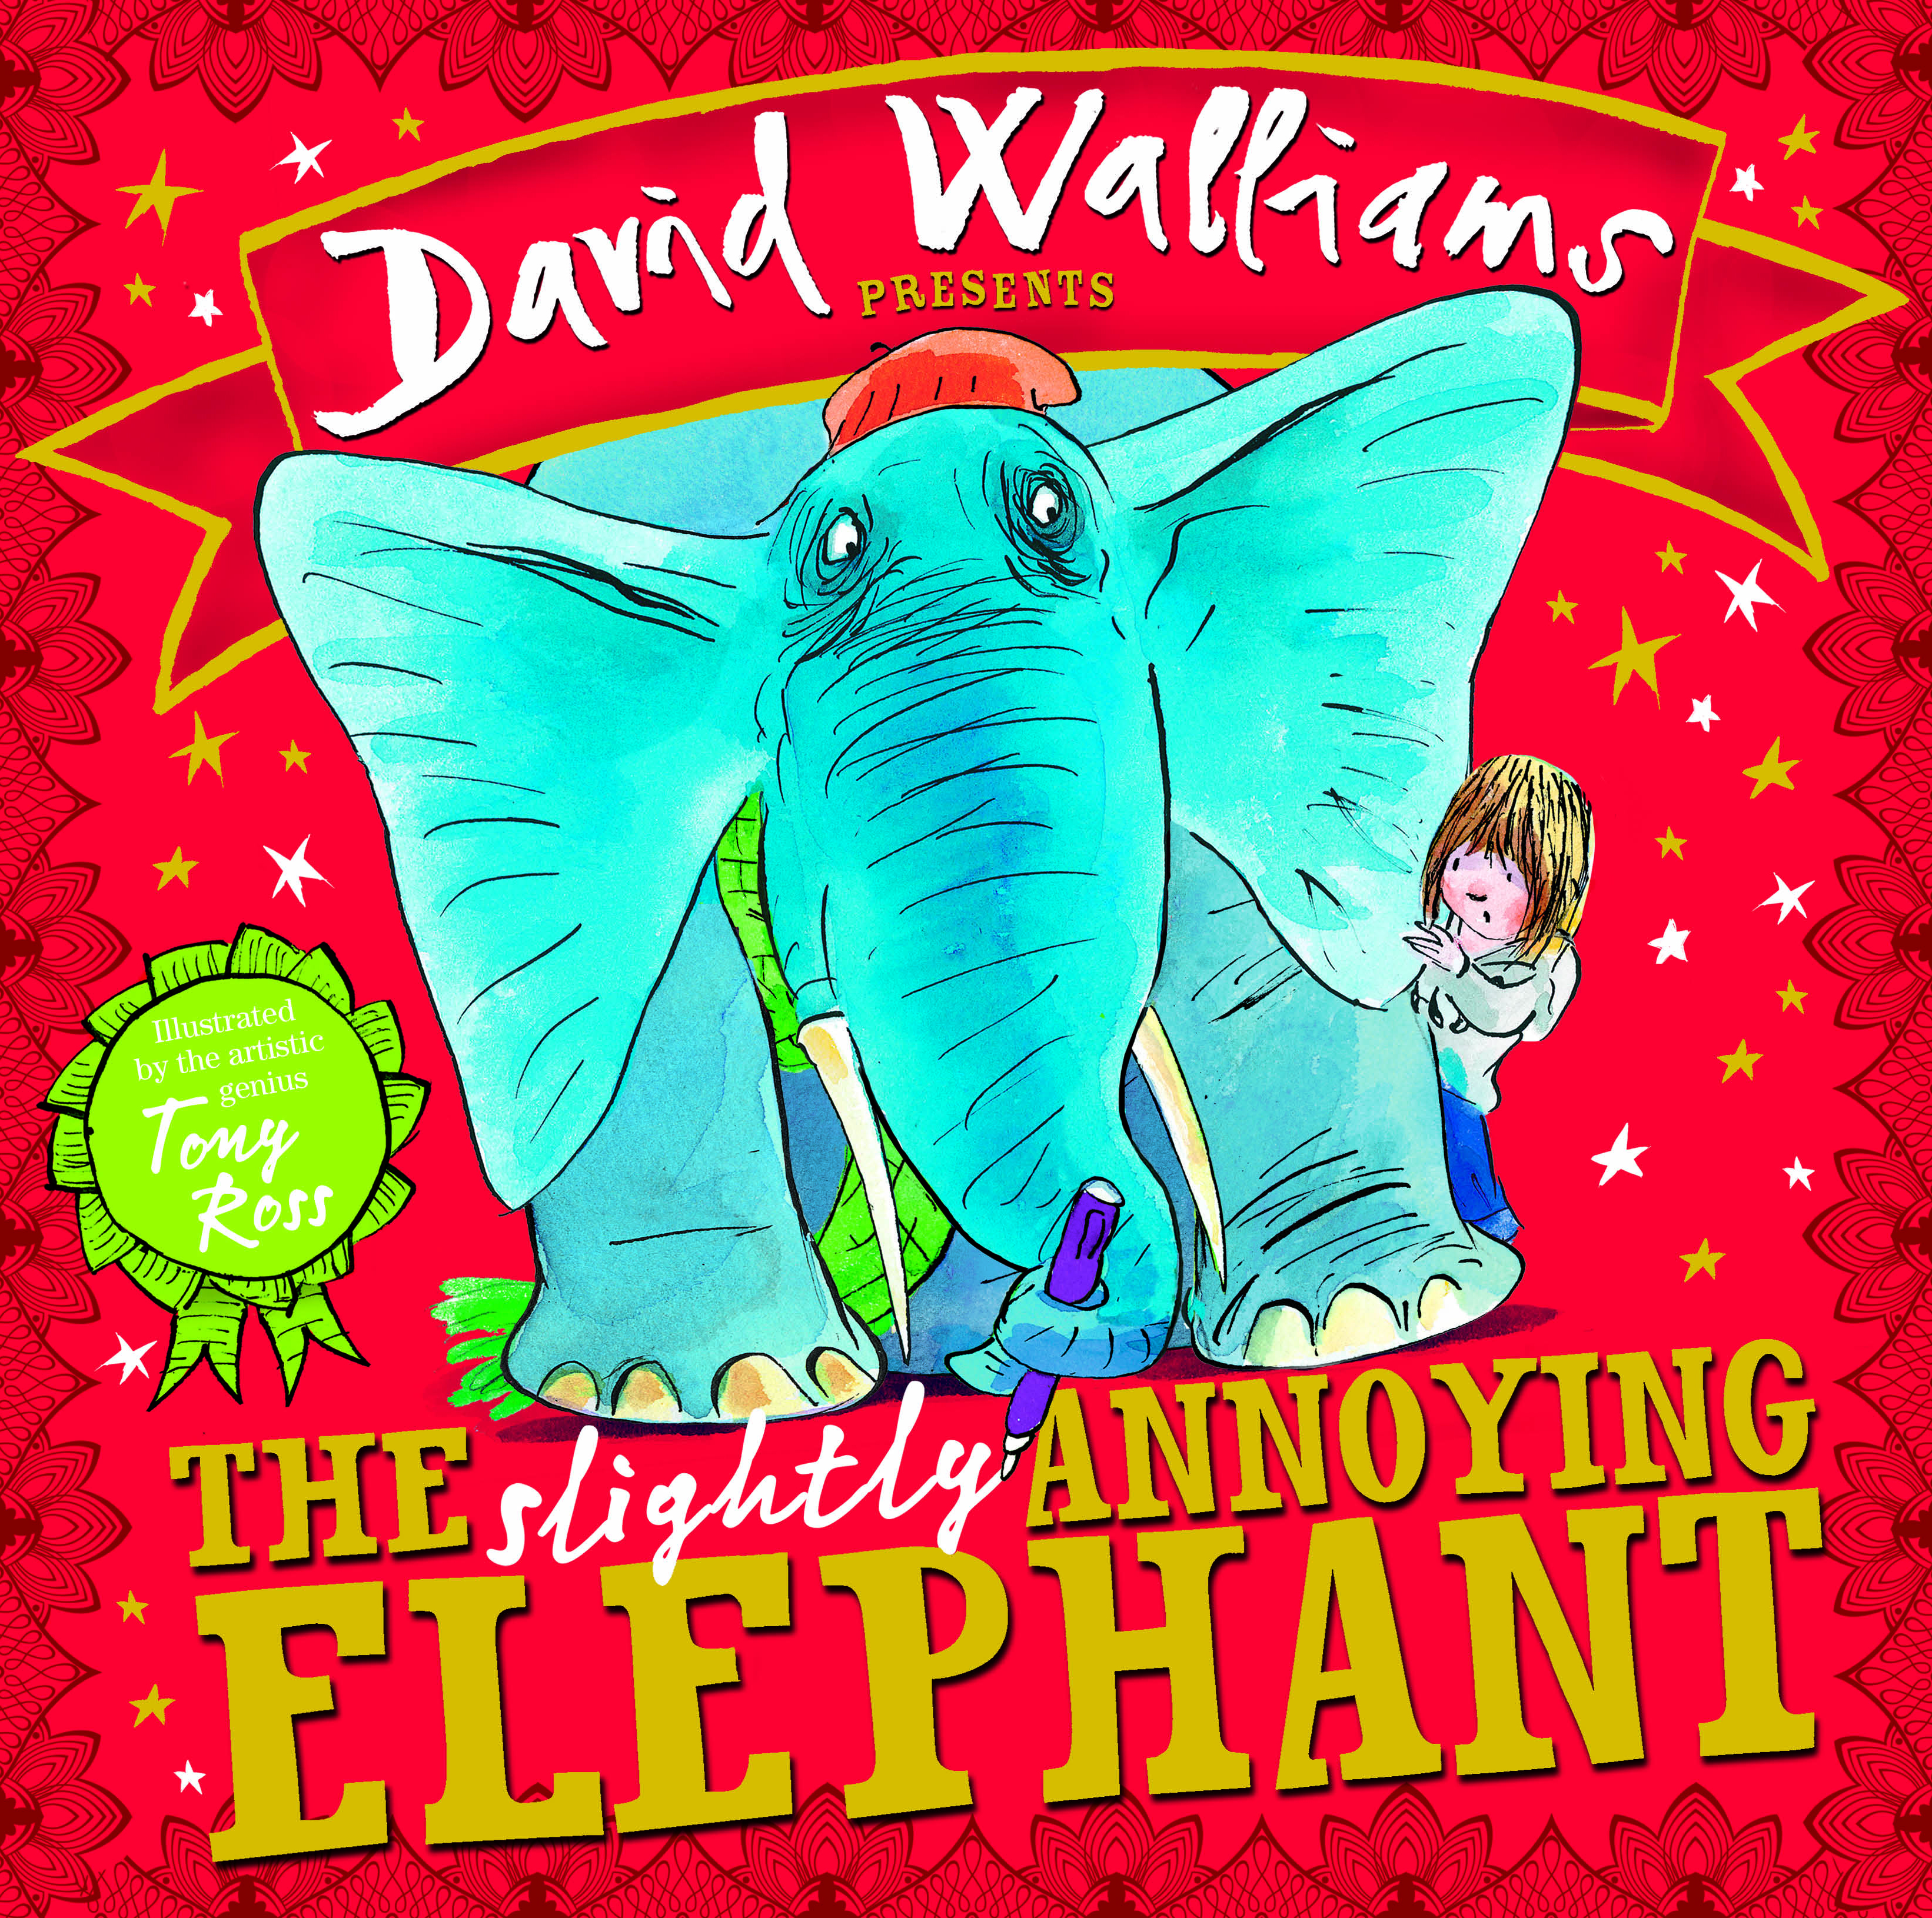 THE Slightly ANNOYING ELEPHANT by David Walliams